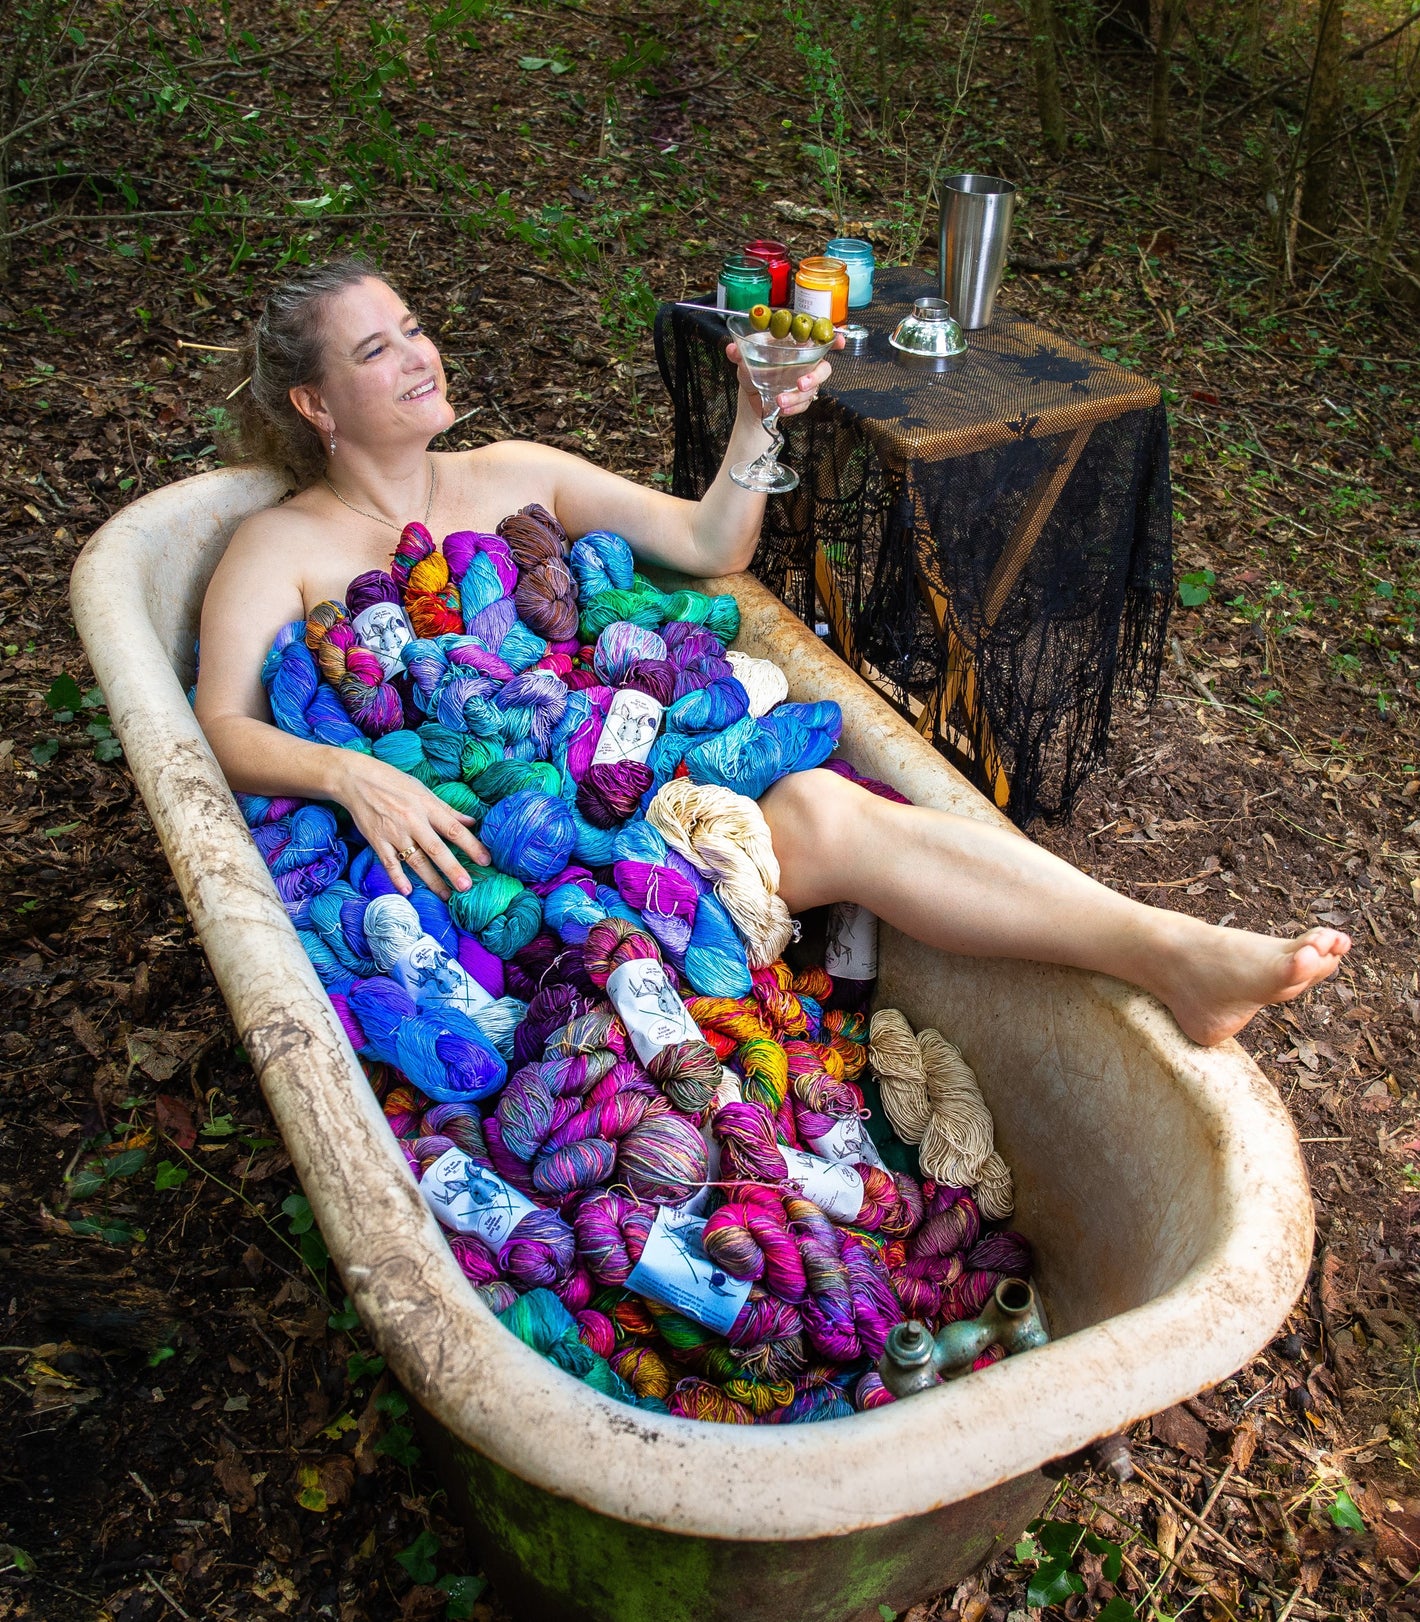 Woman in bathtub full of yarn